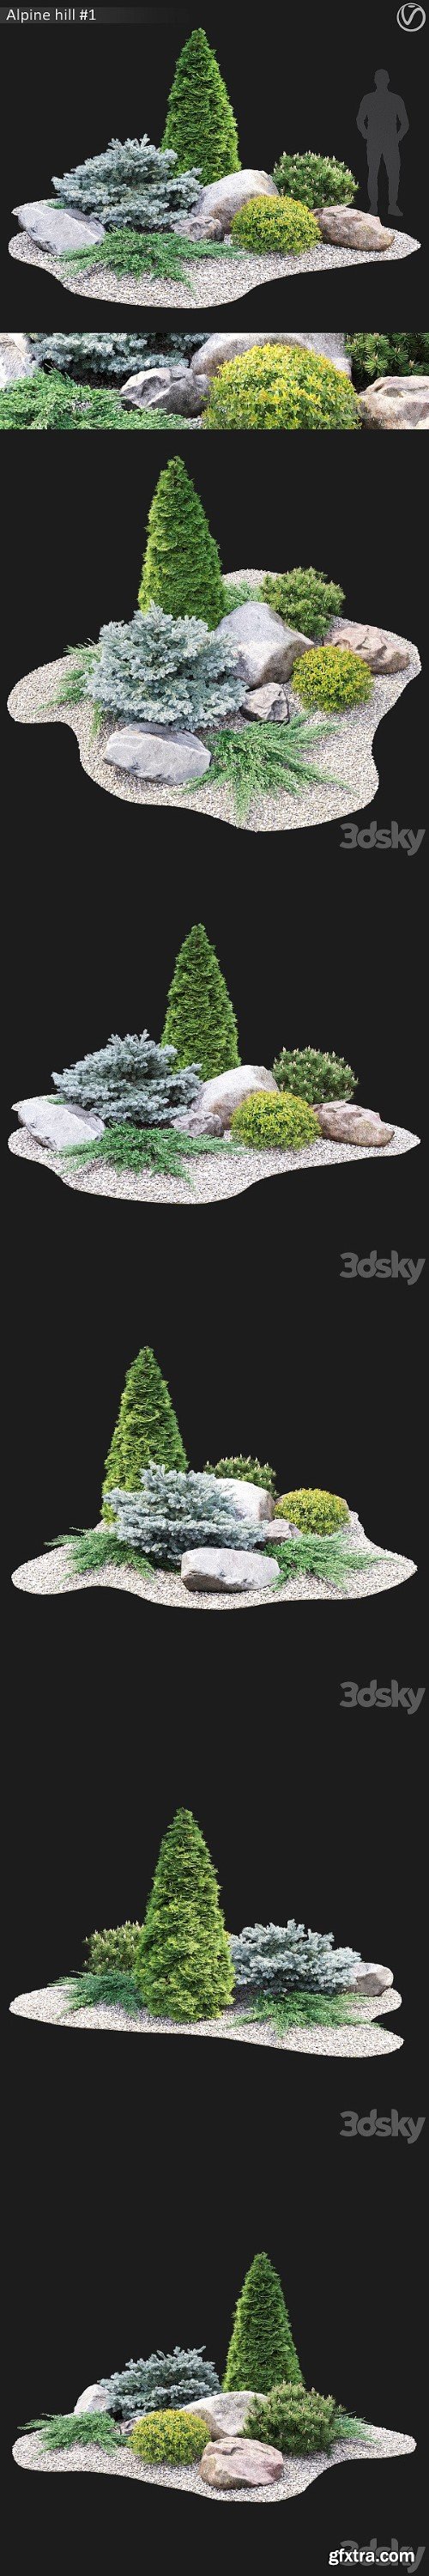 Pro 3DSky - Alpine Hill 1